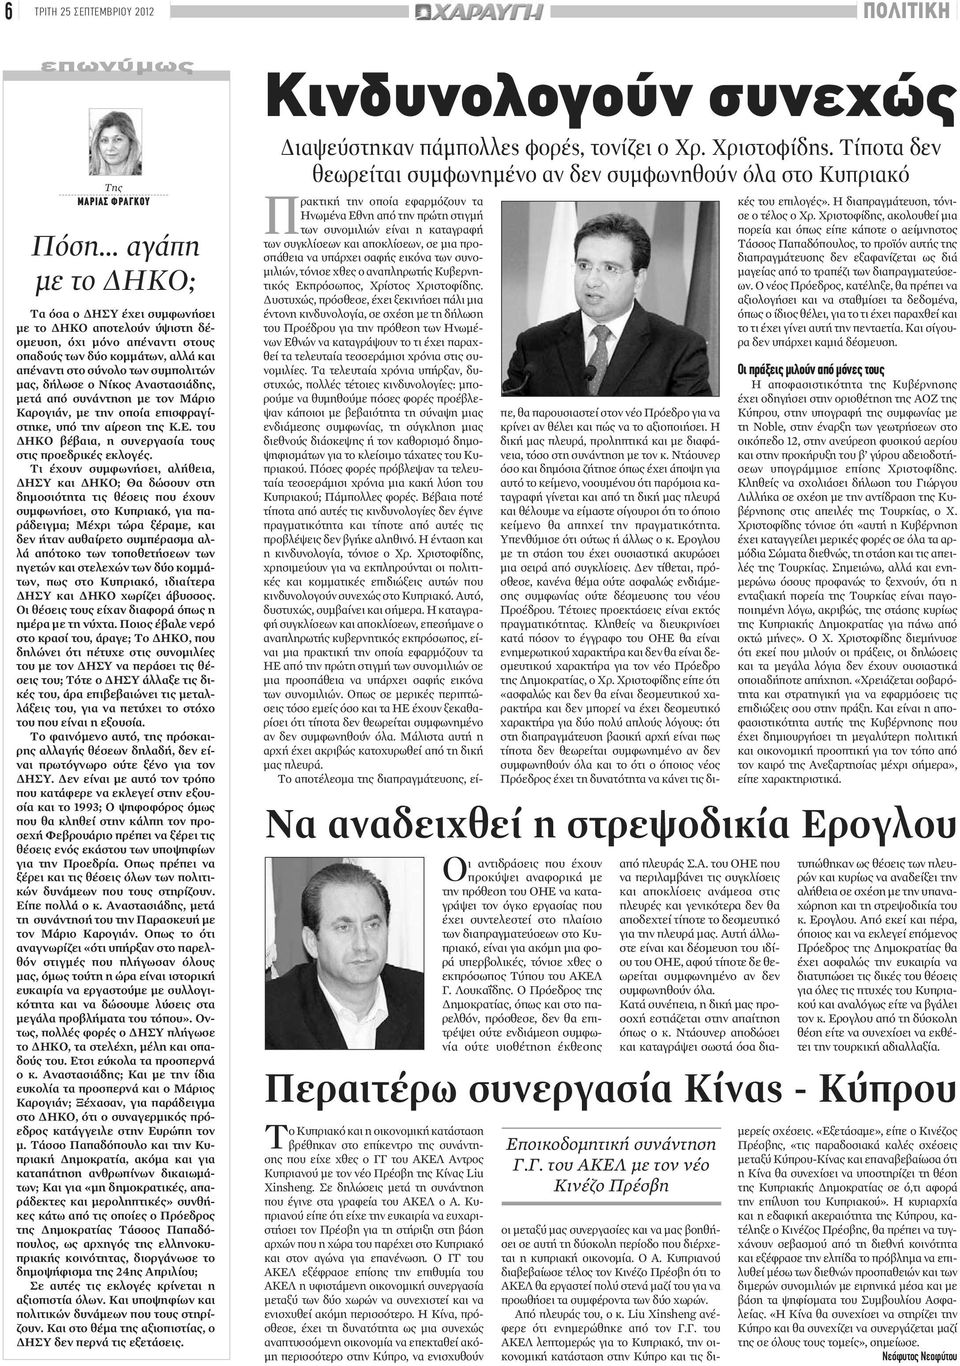 Νίκος Αναστασιάδης, μετά από συνάντηση με τον Μάριο Καρογιάν, με την οποία επισφραγίστηκε, υπό την αίρεση της Κ.Ε. του ΔΗΚΟ βέβαια, η συνεργασία τους στις προεδρικές εκλογές.